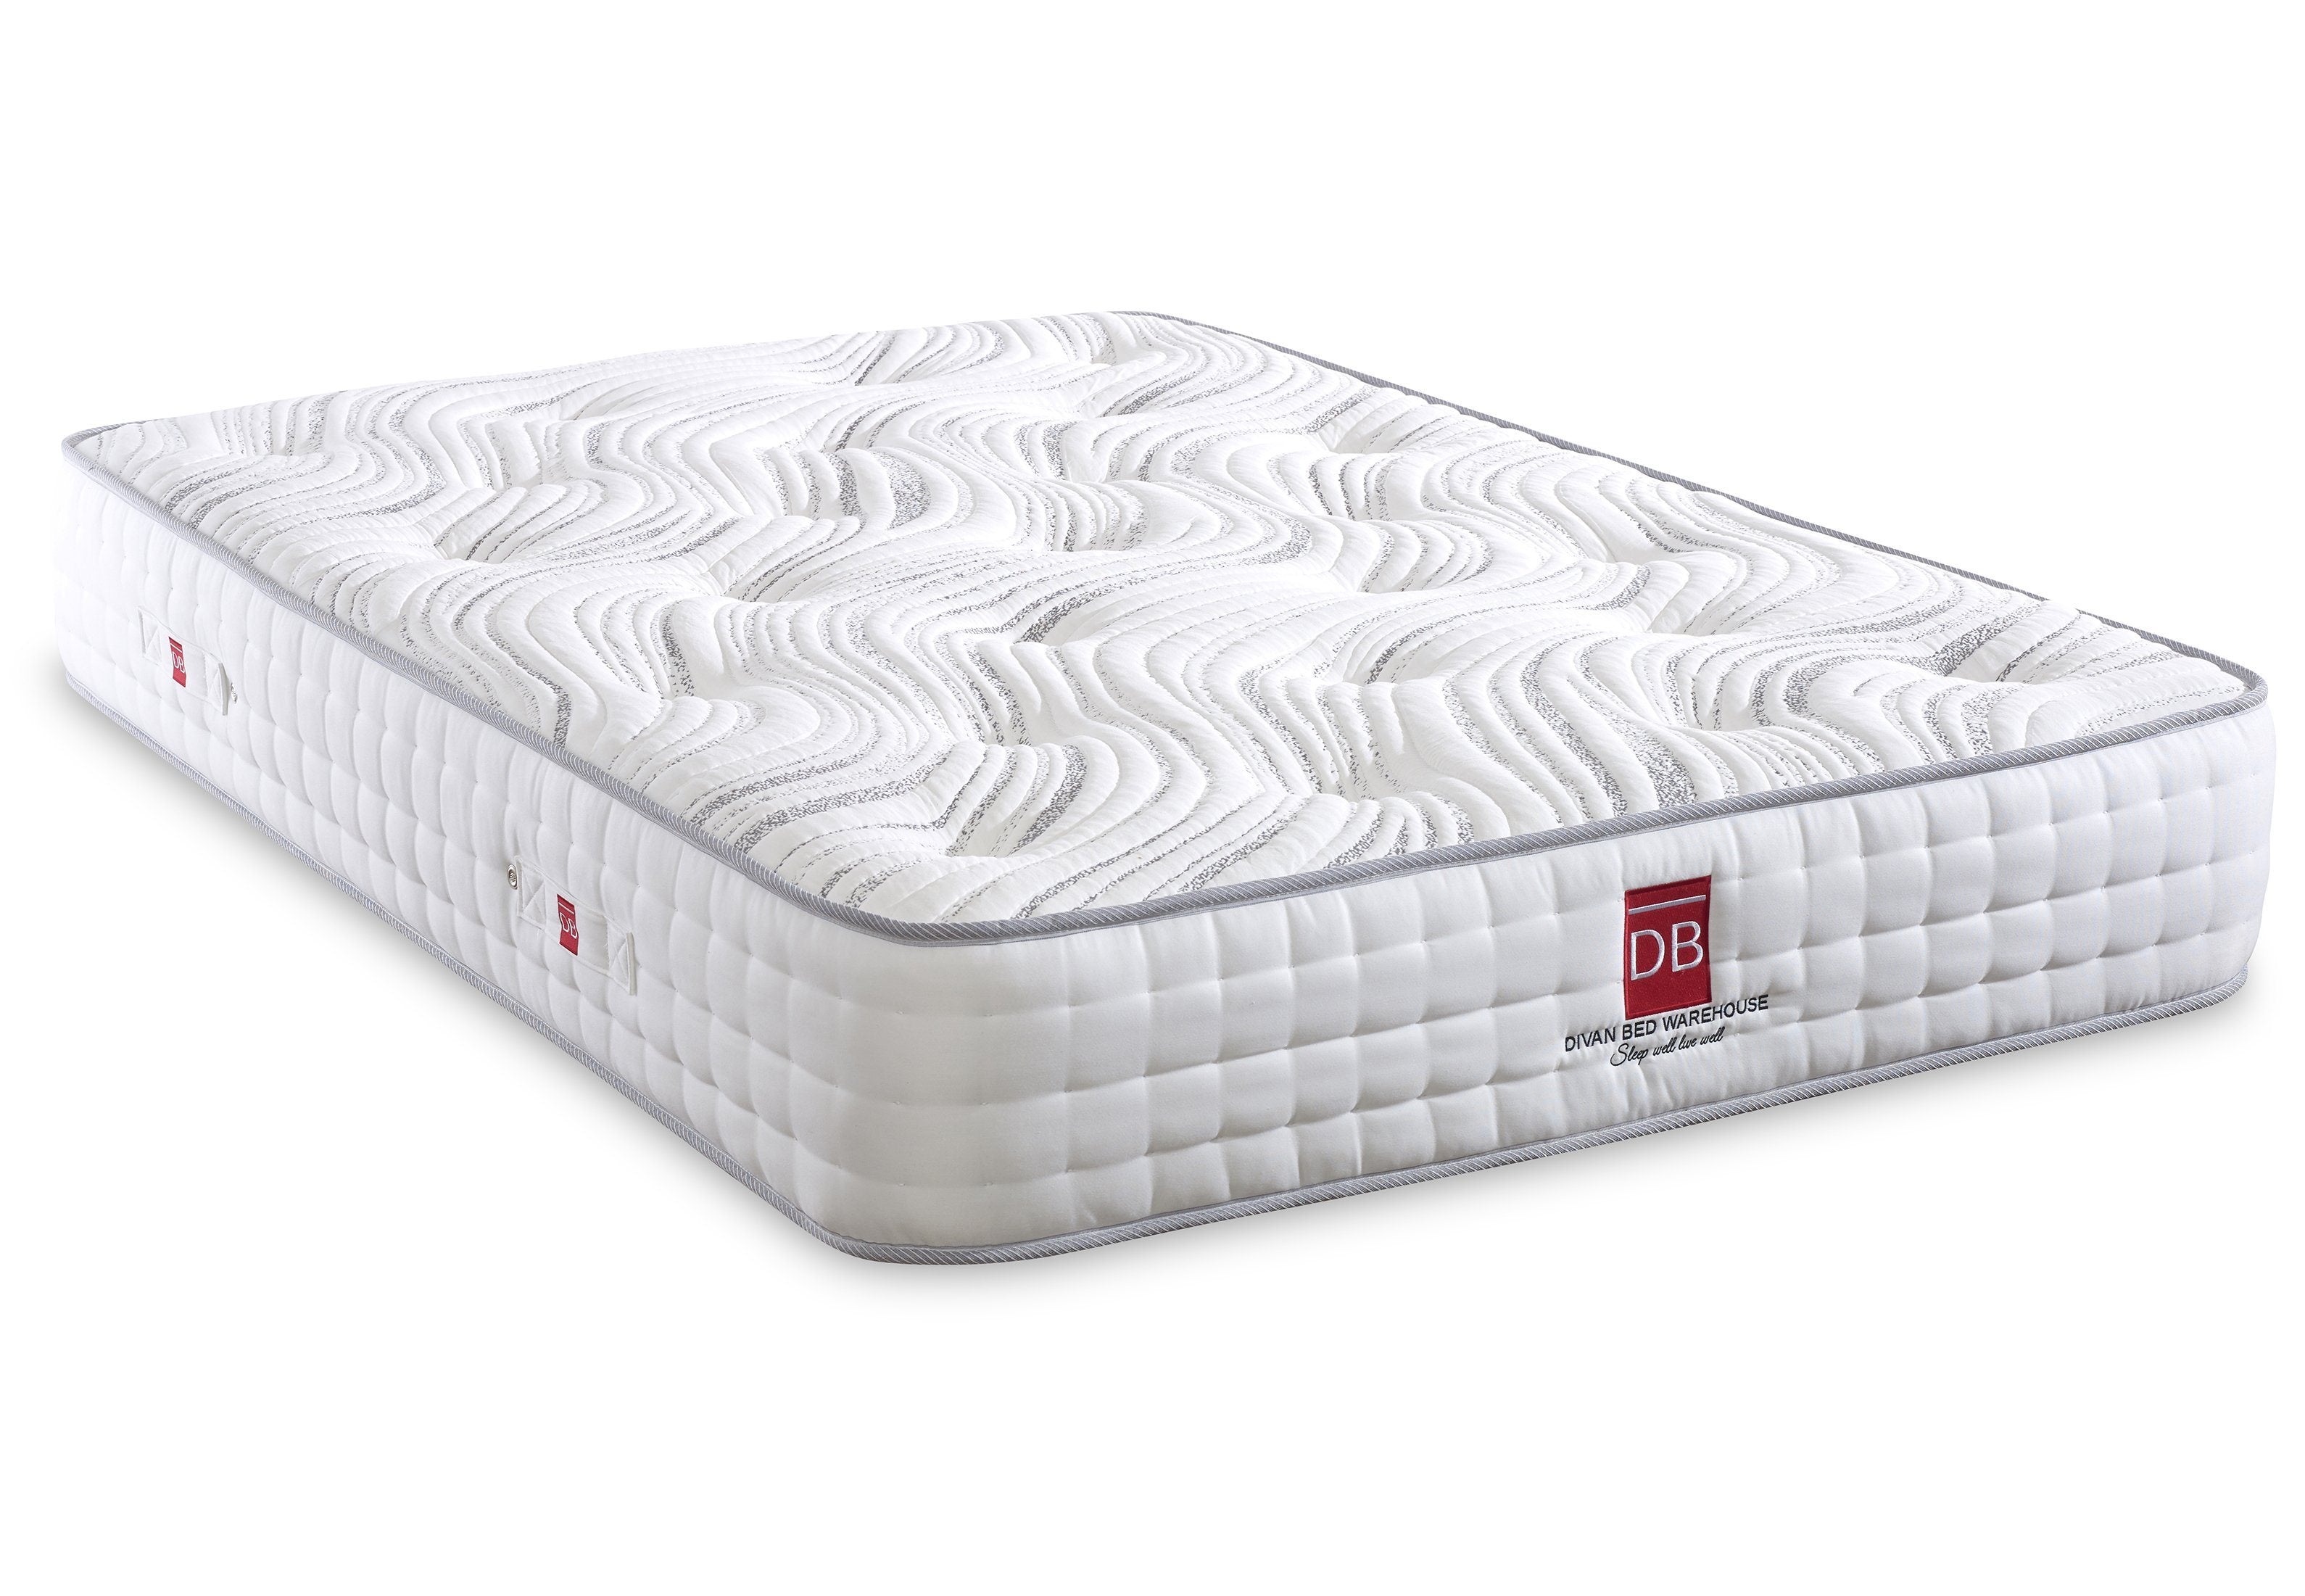 natural latex and memory foam mattress